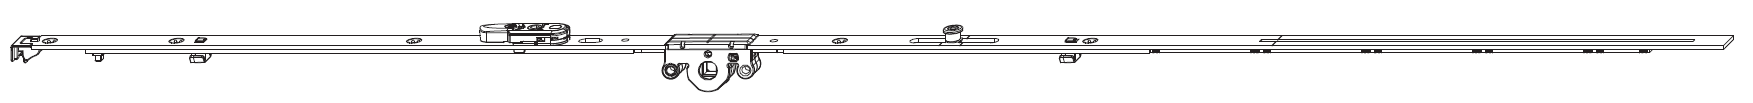 MAICO -  Cremonese MULTI-MATIC anta ribalta antieffrazione altezza maniglia fissa con piedino e dss per ribalta - gr / dim. 1590 - entrata 15 - alt. man. 600 - lbb/hbb 1341 - 1590